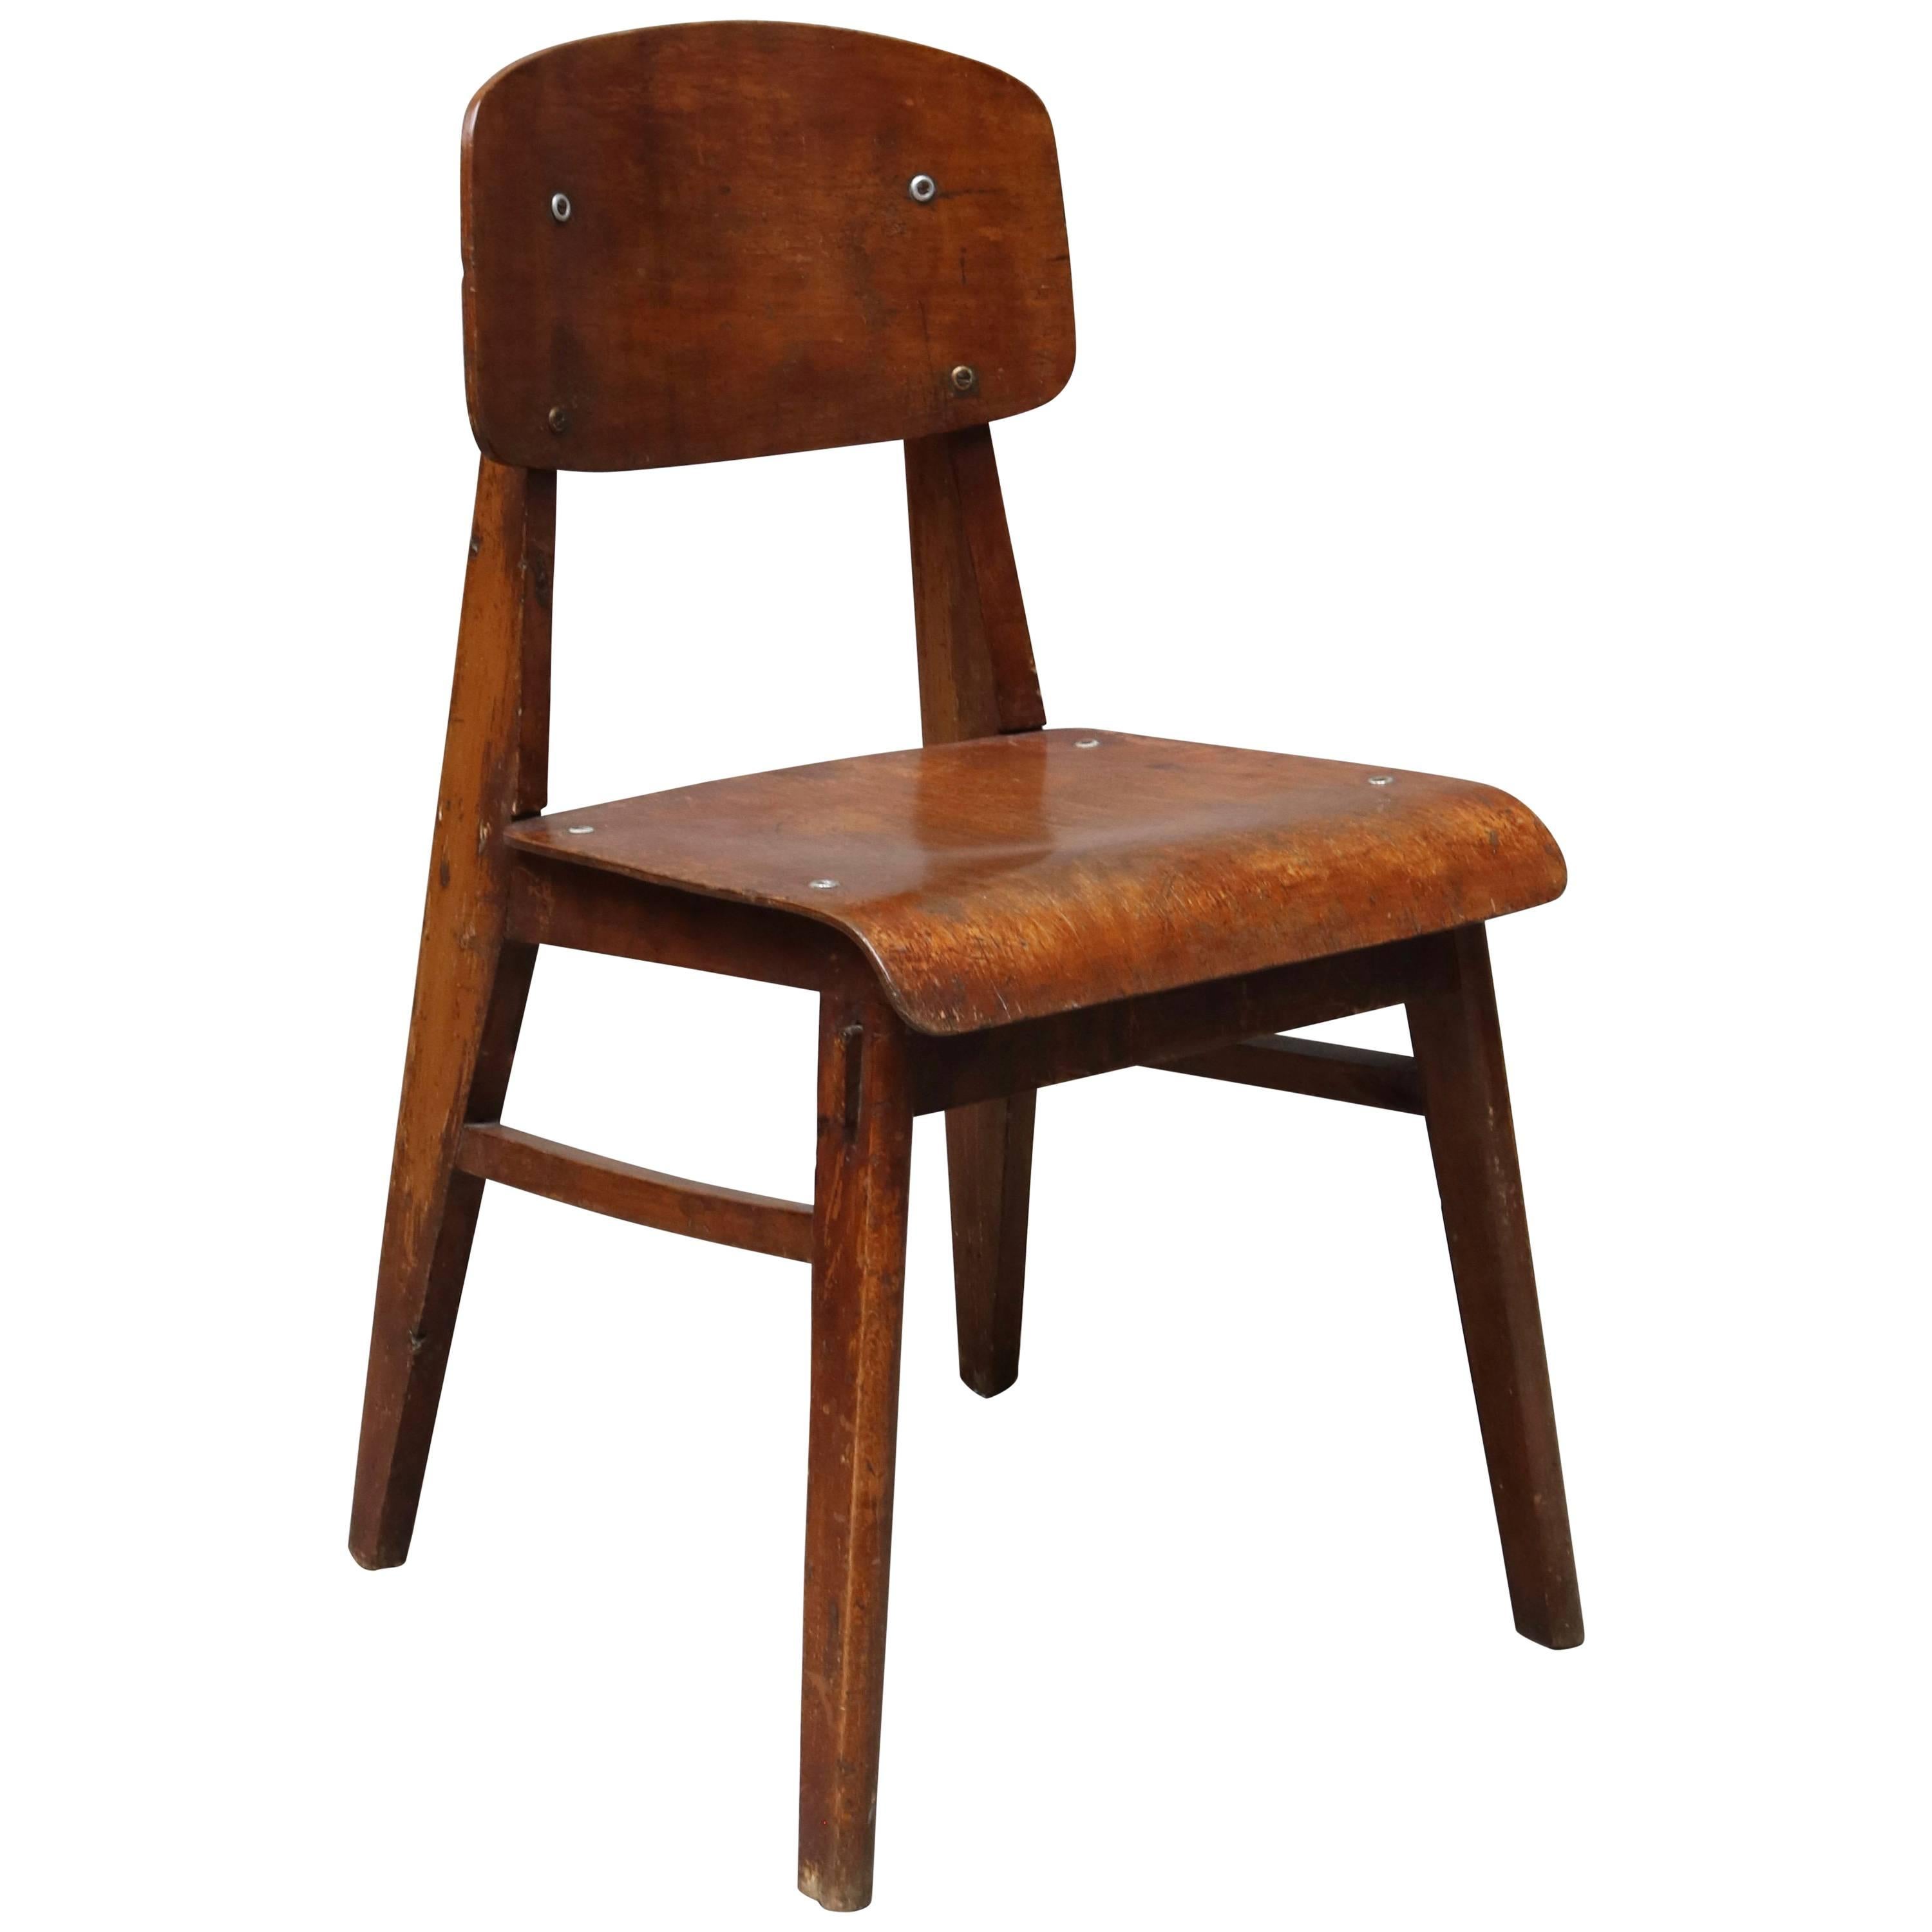 Unique Midcentury Wooden Chair by Jean Prouvé For Sale